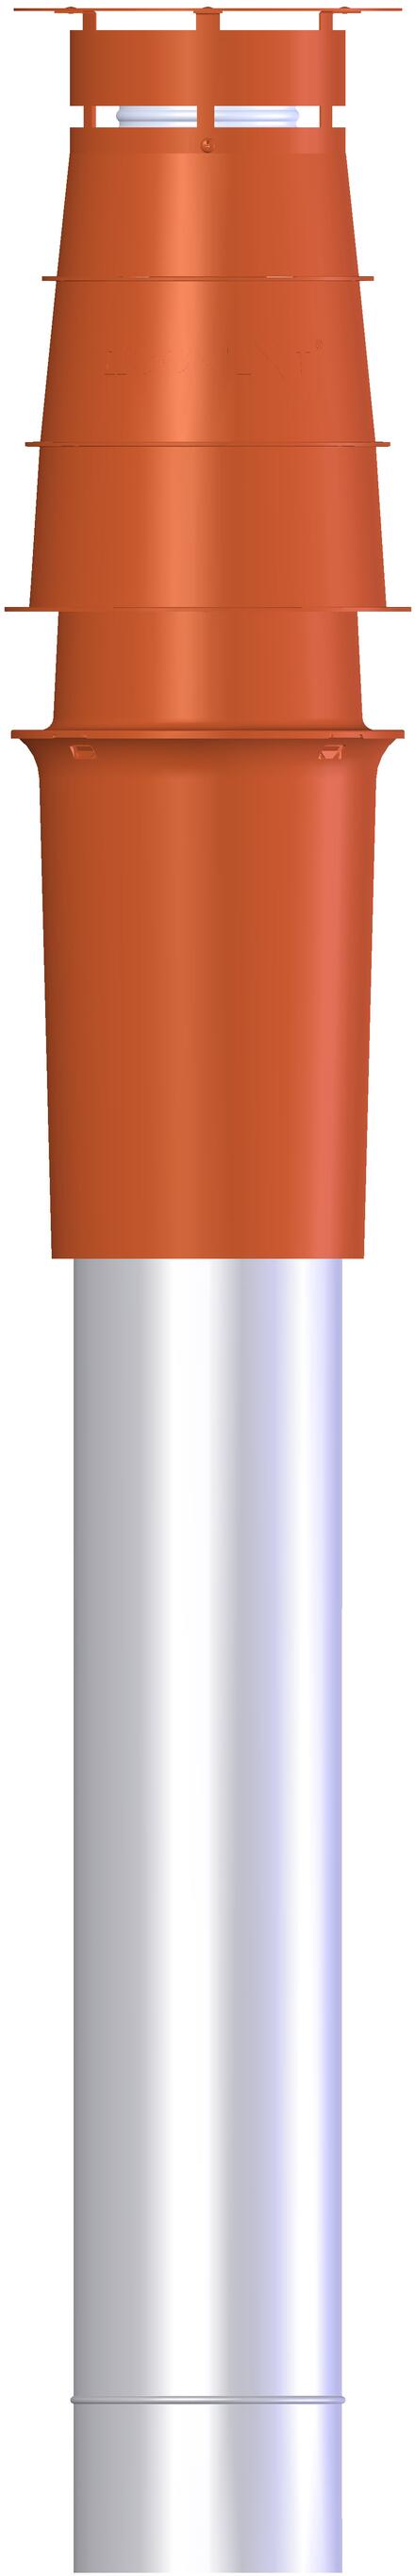 CONDUIT CONDENSATION VENTOUSE - Système concentrique Inox/Galva - Chaudière ventouse gaz/fioul